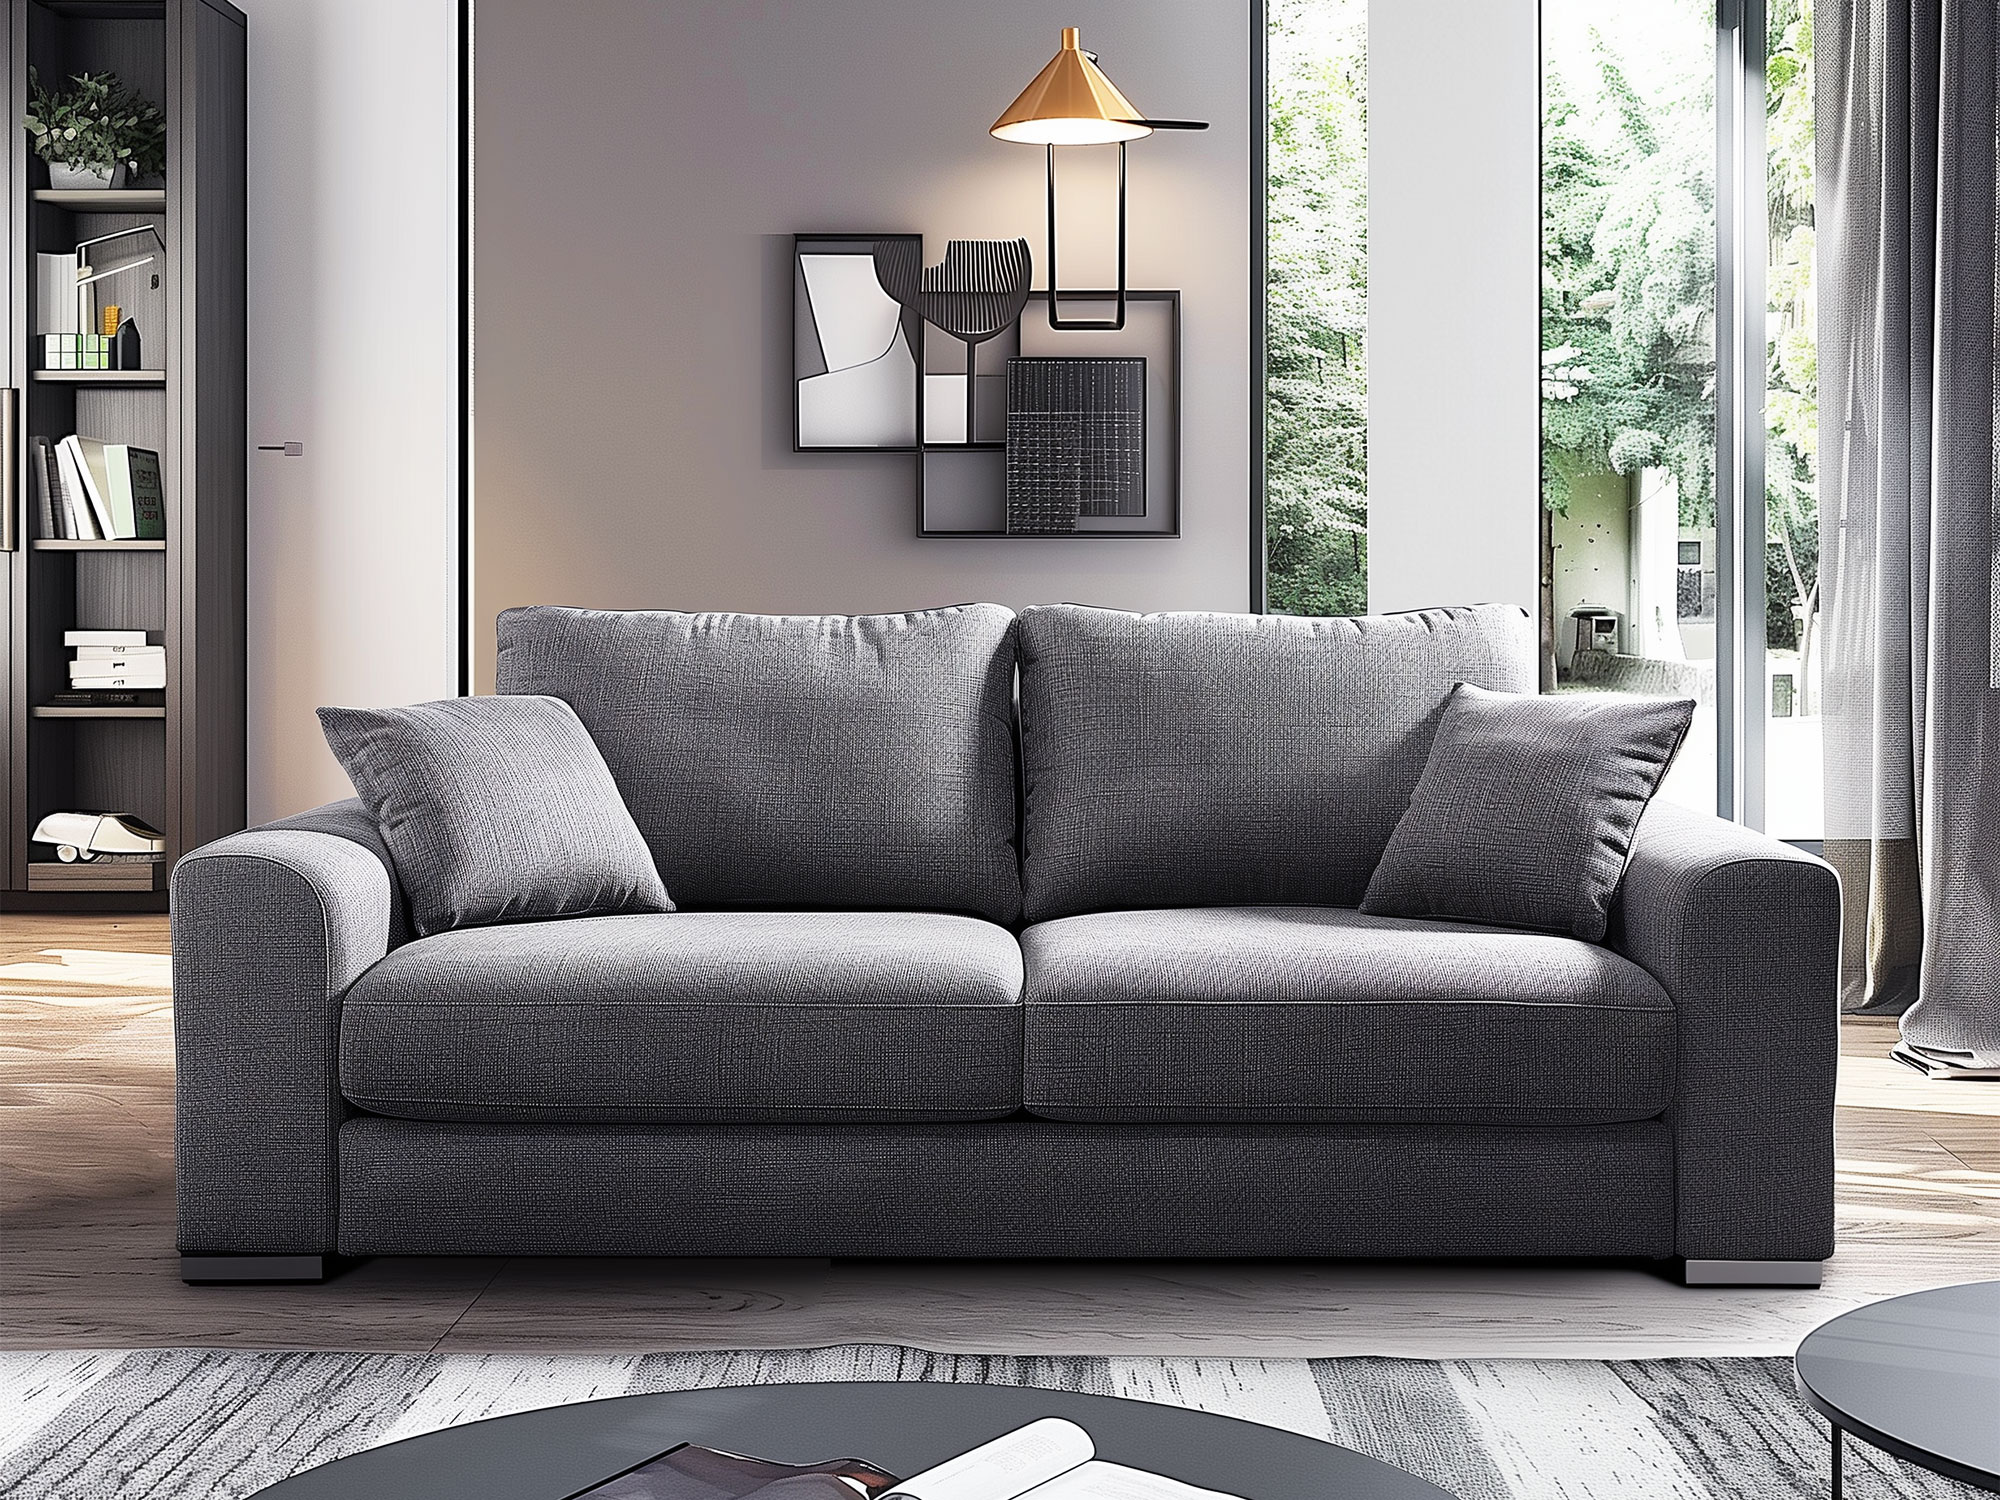 Sofa rozkładana do przodu – komfort i oszczędność miejsca